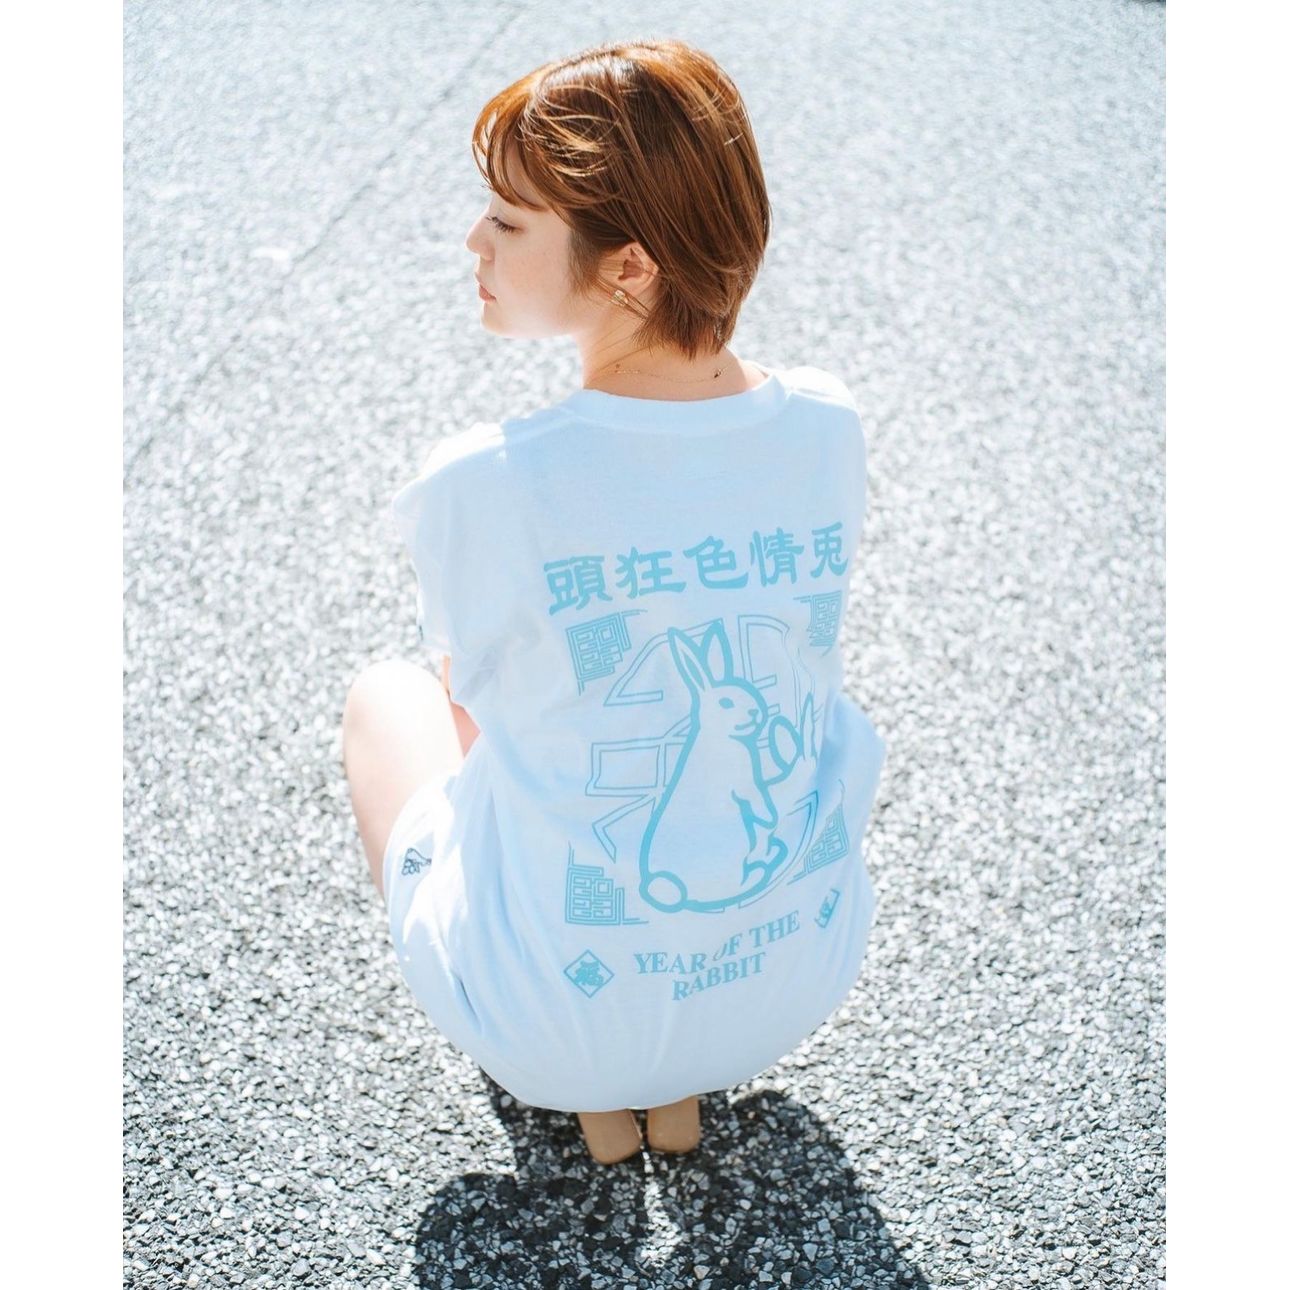 沖繩/月桃FR2 YEAR OF THE RABBIT T-shirt [FRC2339] / WHITE